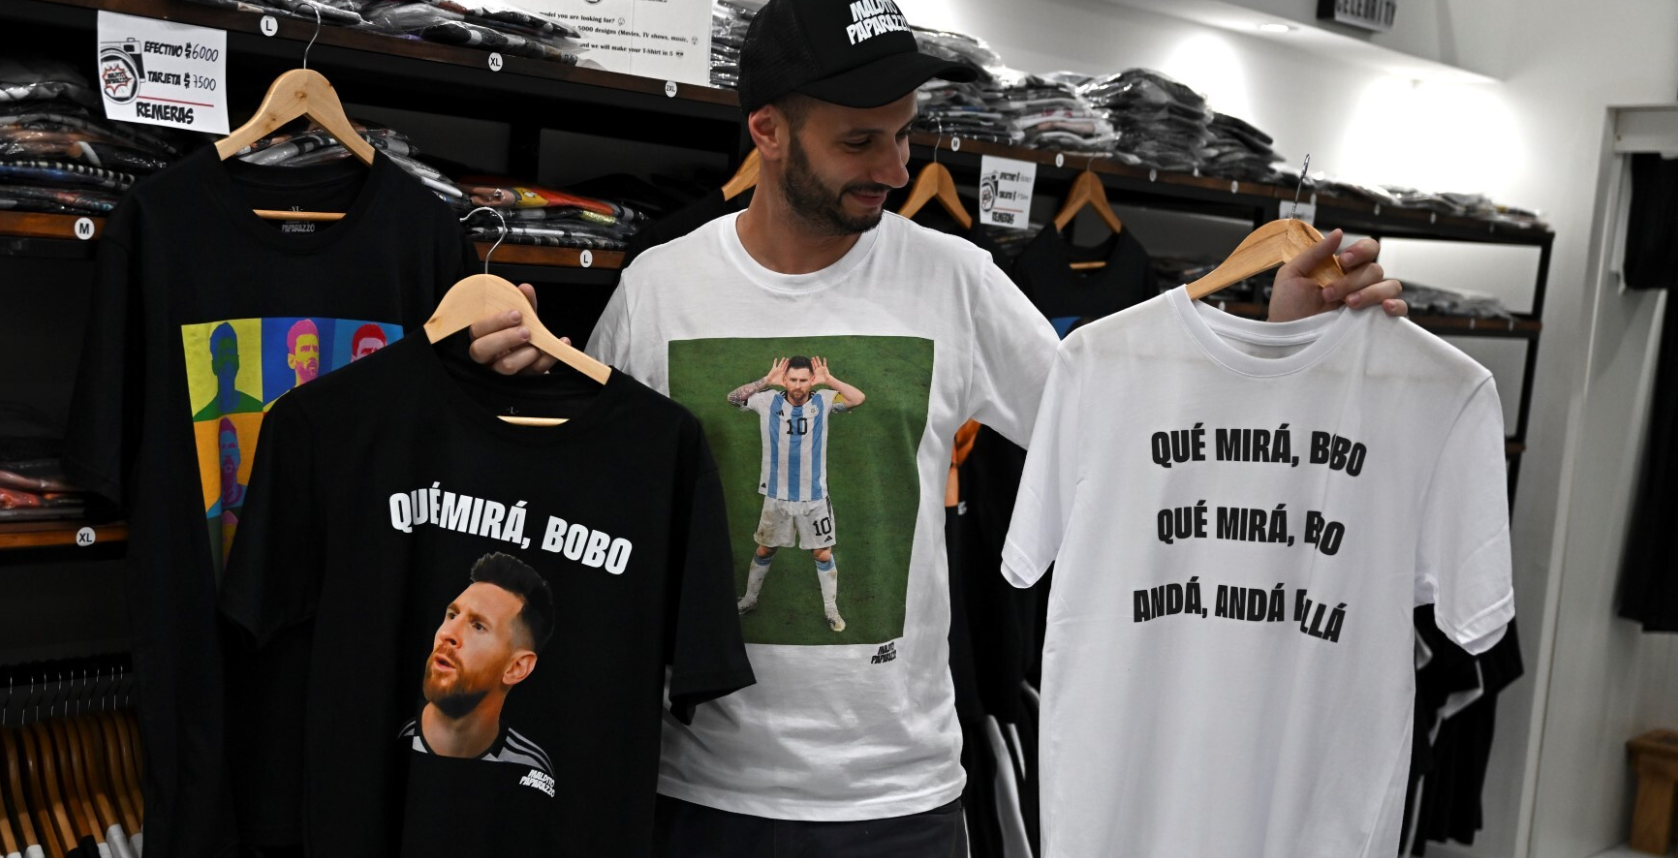 “Qué miras, bobo ?” : quand la punchline de Messi s’affiche sur des T-shirts